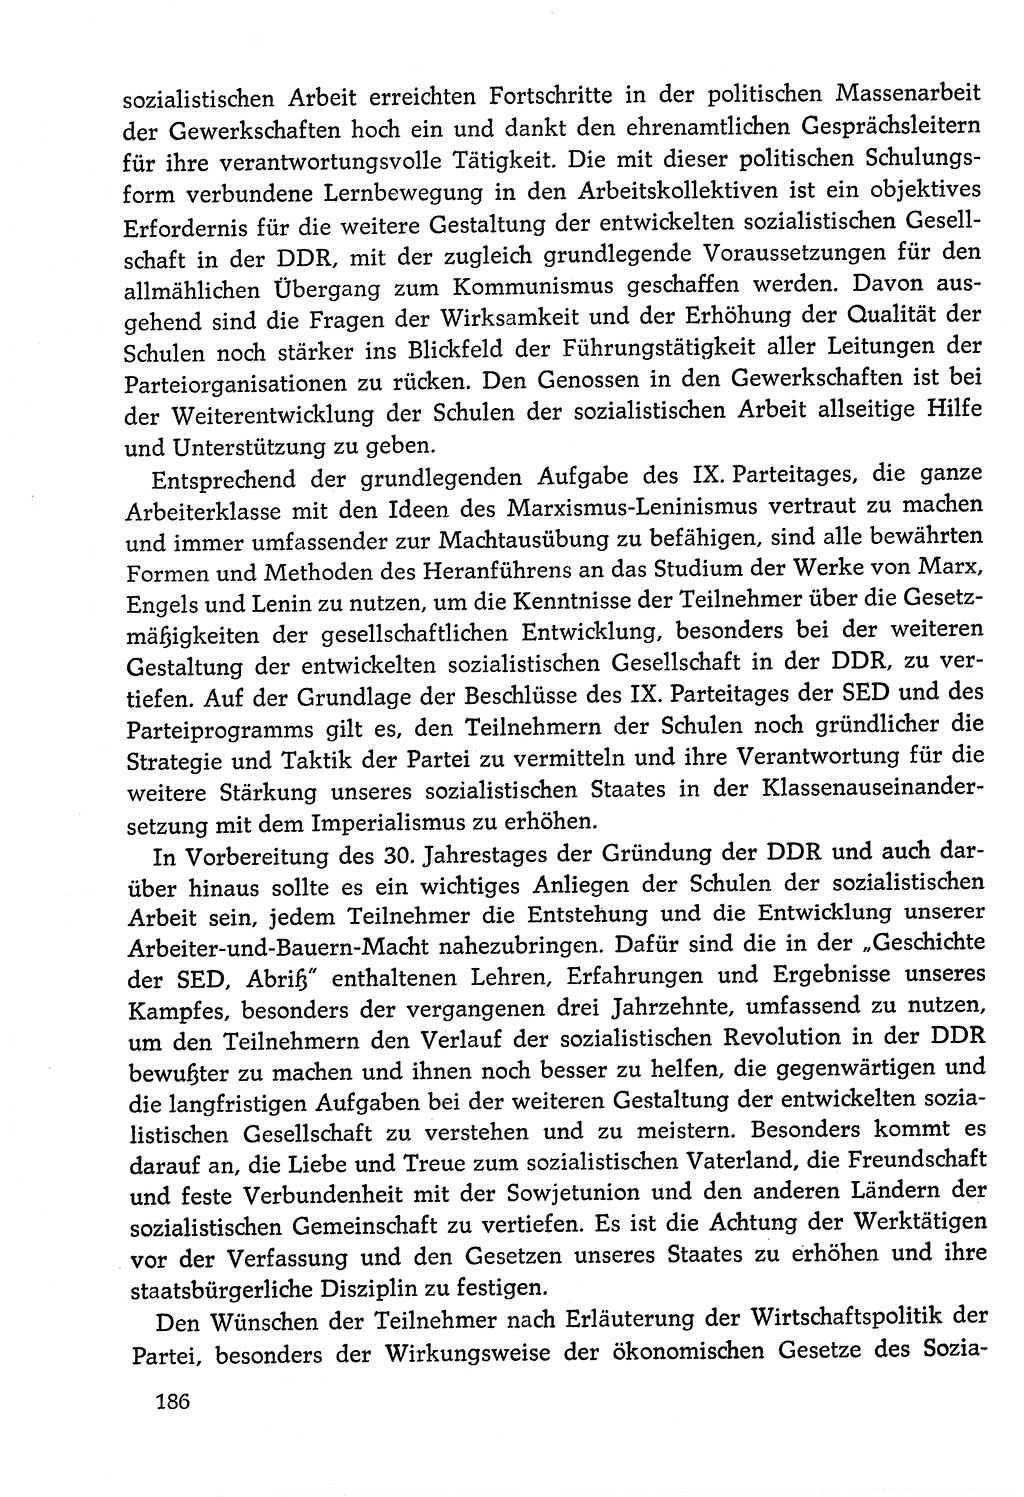 Dokumente der Sozialistischen Einheitspartei Deutschlands (SED) [Deutsche Demokratische Republik (DDR)] 1978-1979, Seite 186 (Dok. SED DDR 1978-1979, S. 186)